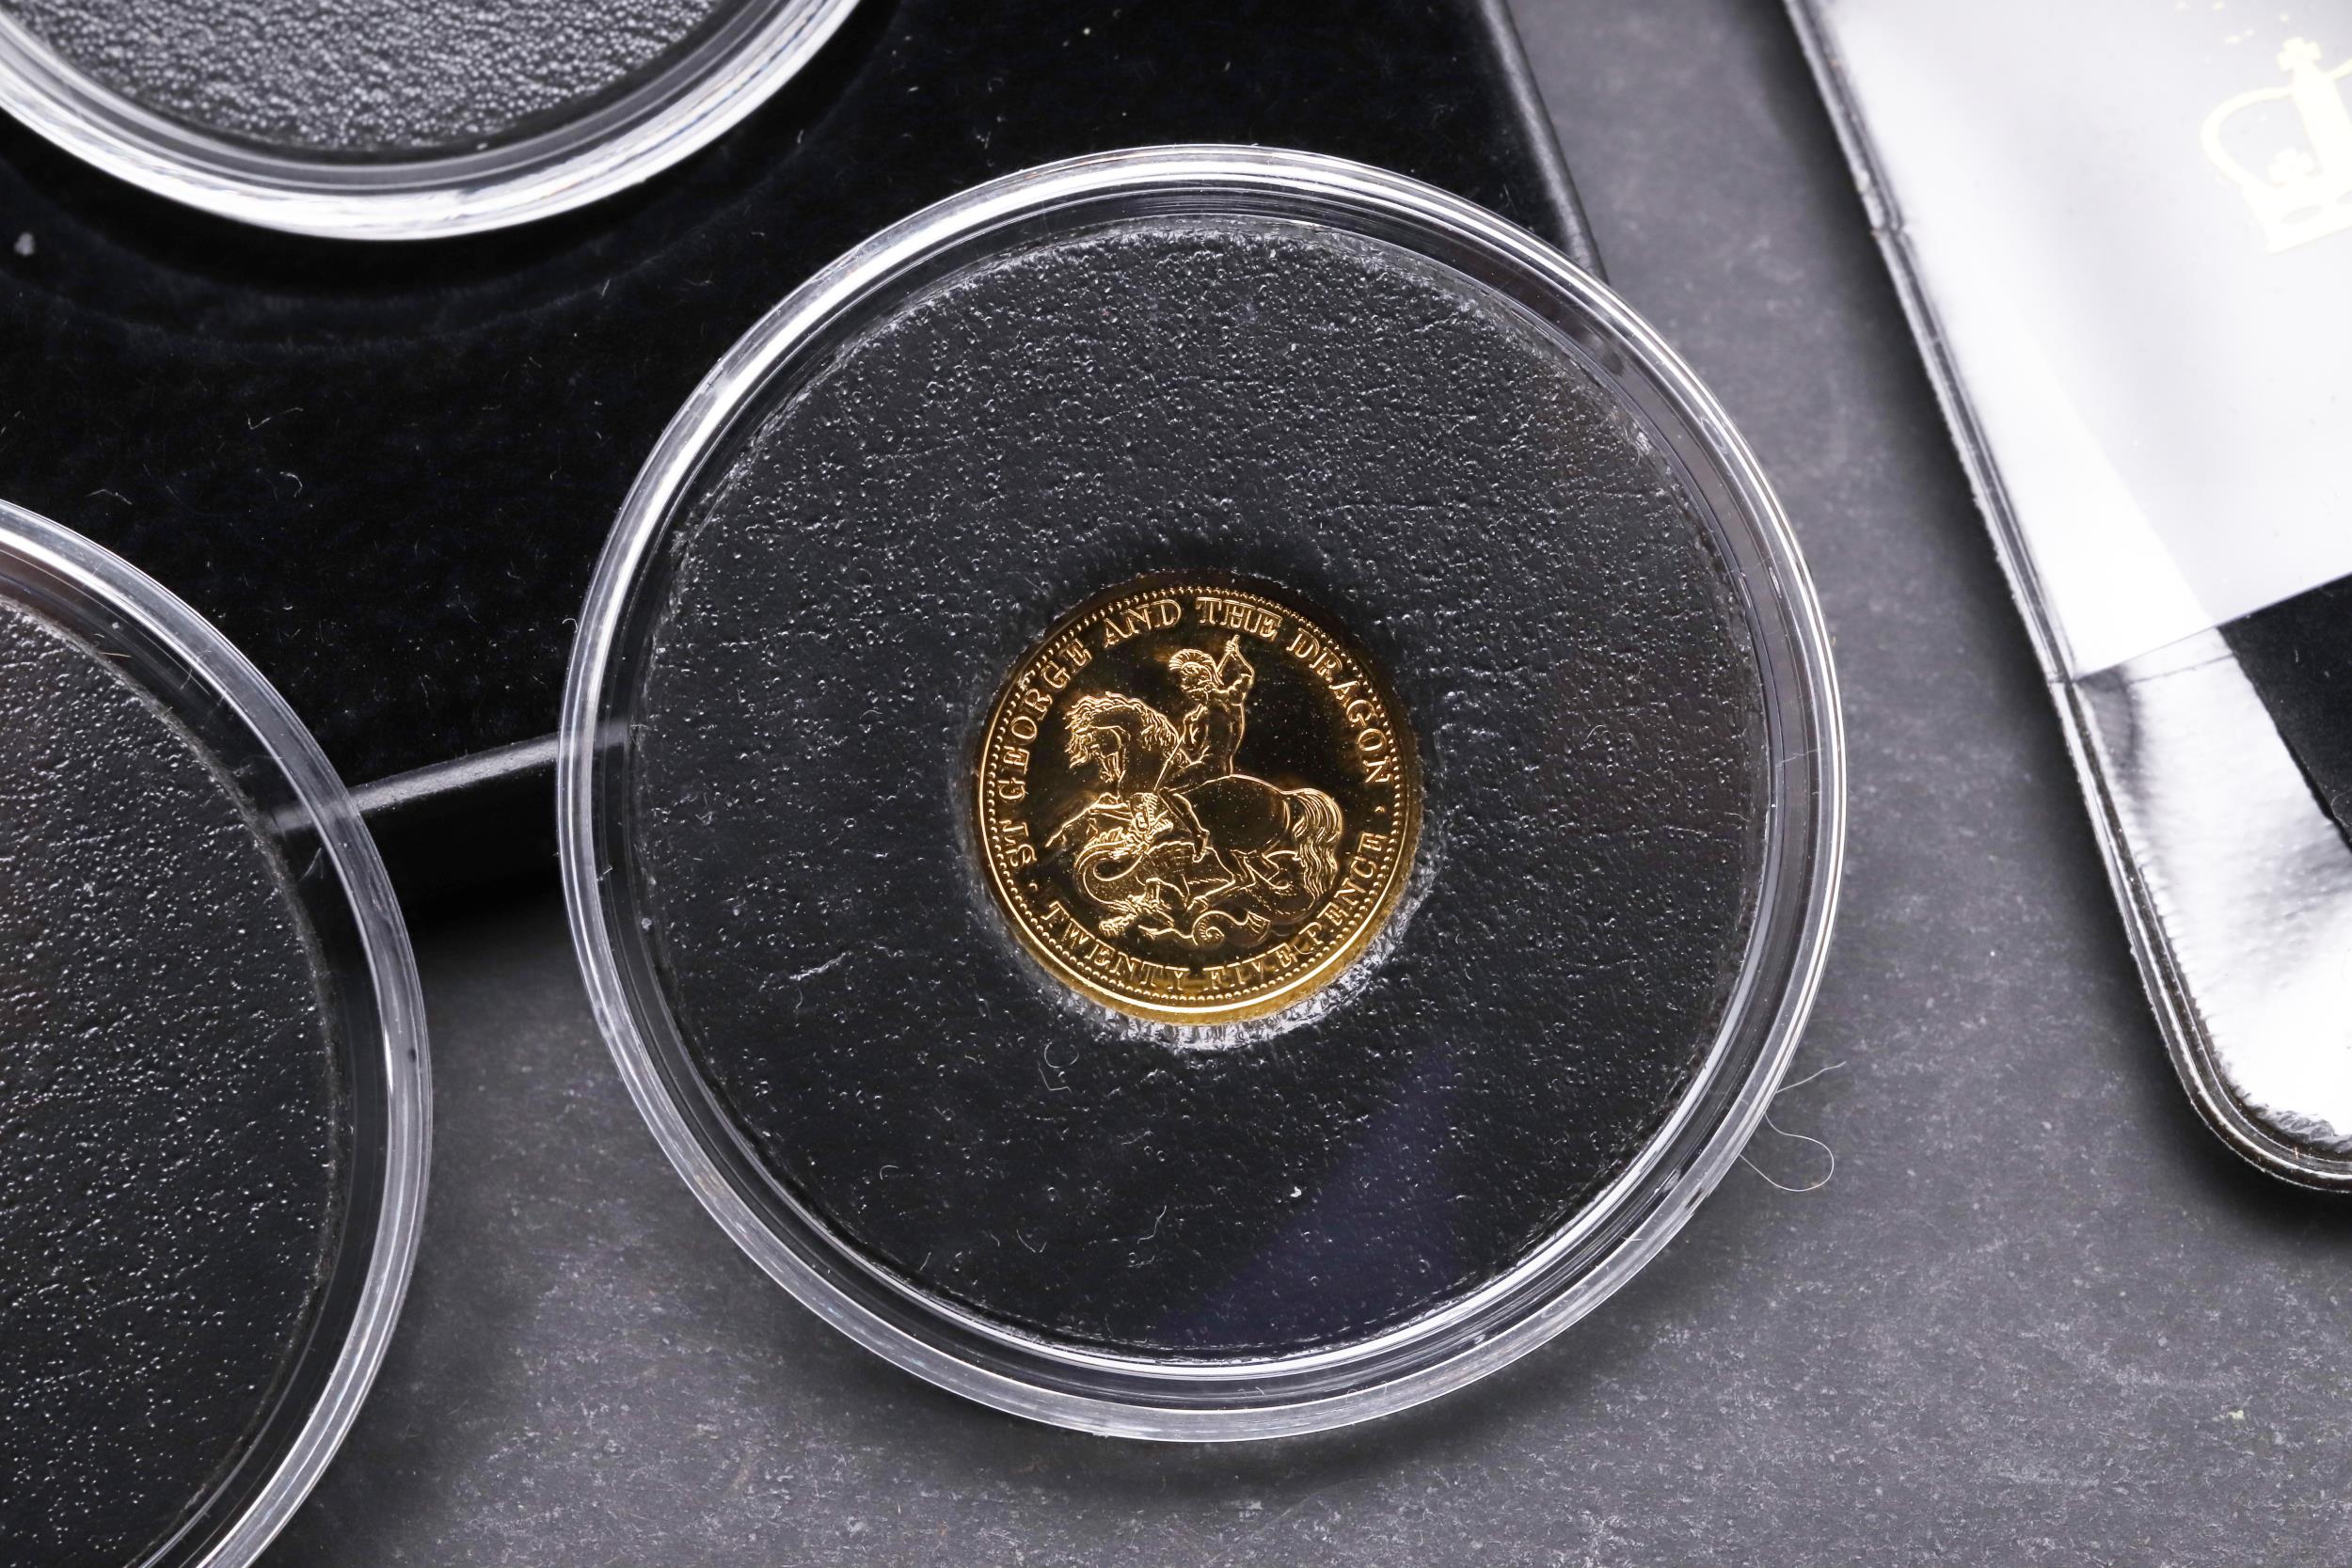 AN ELIZABETH II TRISTAN DA CUNHA GOLD CROWN AND TWO SIMILAR GOLD COINS. 2013. - Bild 8 aus 8